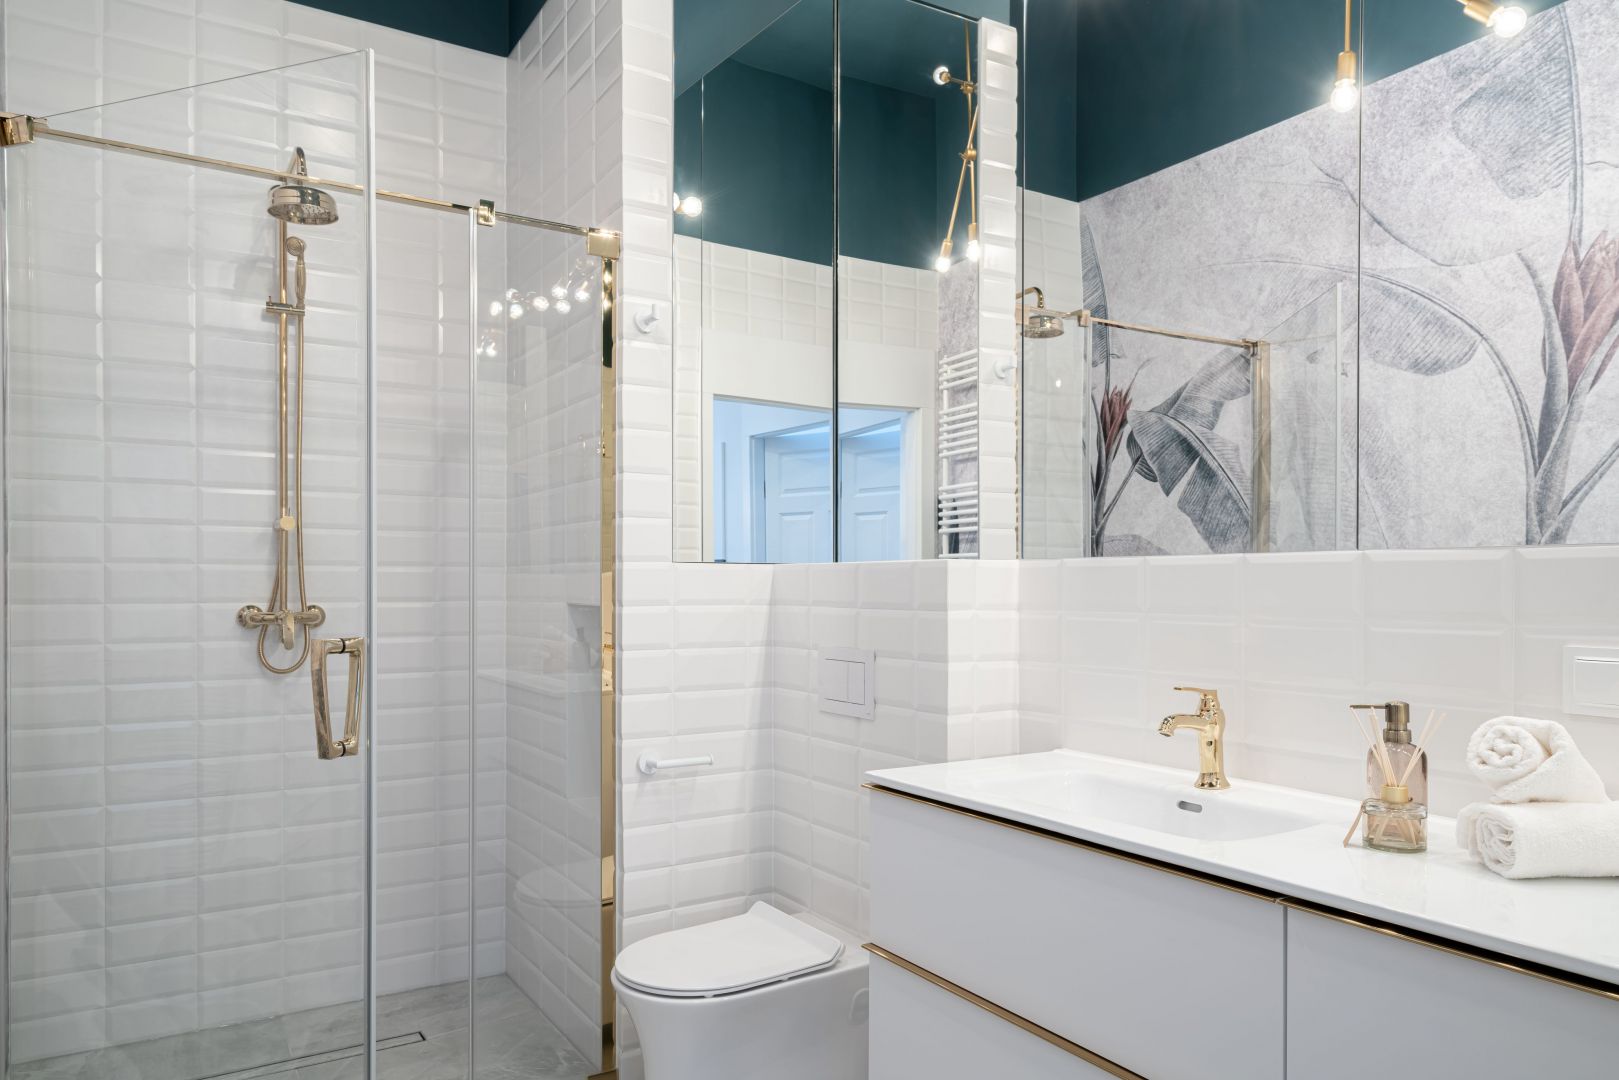 Złota kabina prysznicowa w białej łazience. Projekt i zdjęcie: KODO Projekty i Realizacje Wnętrz